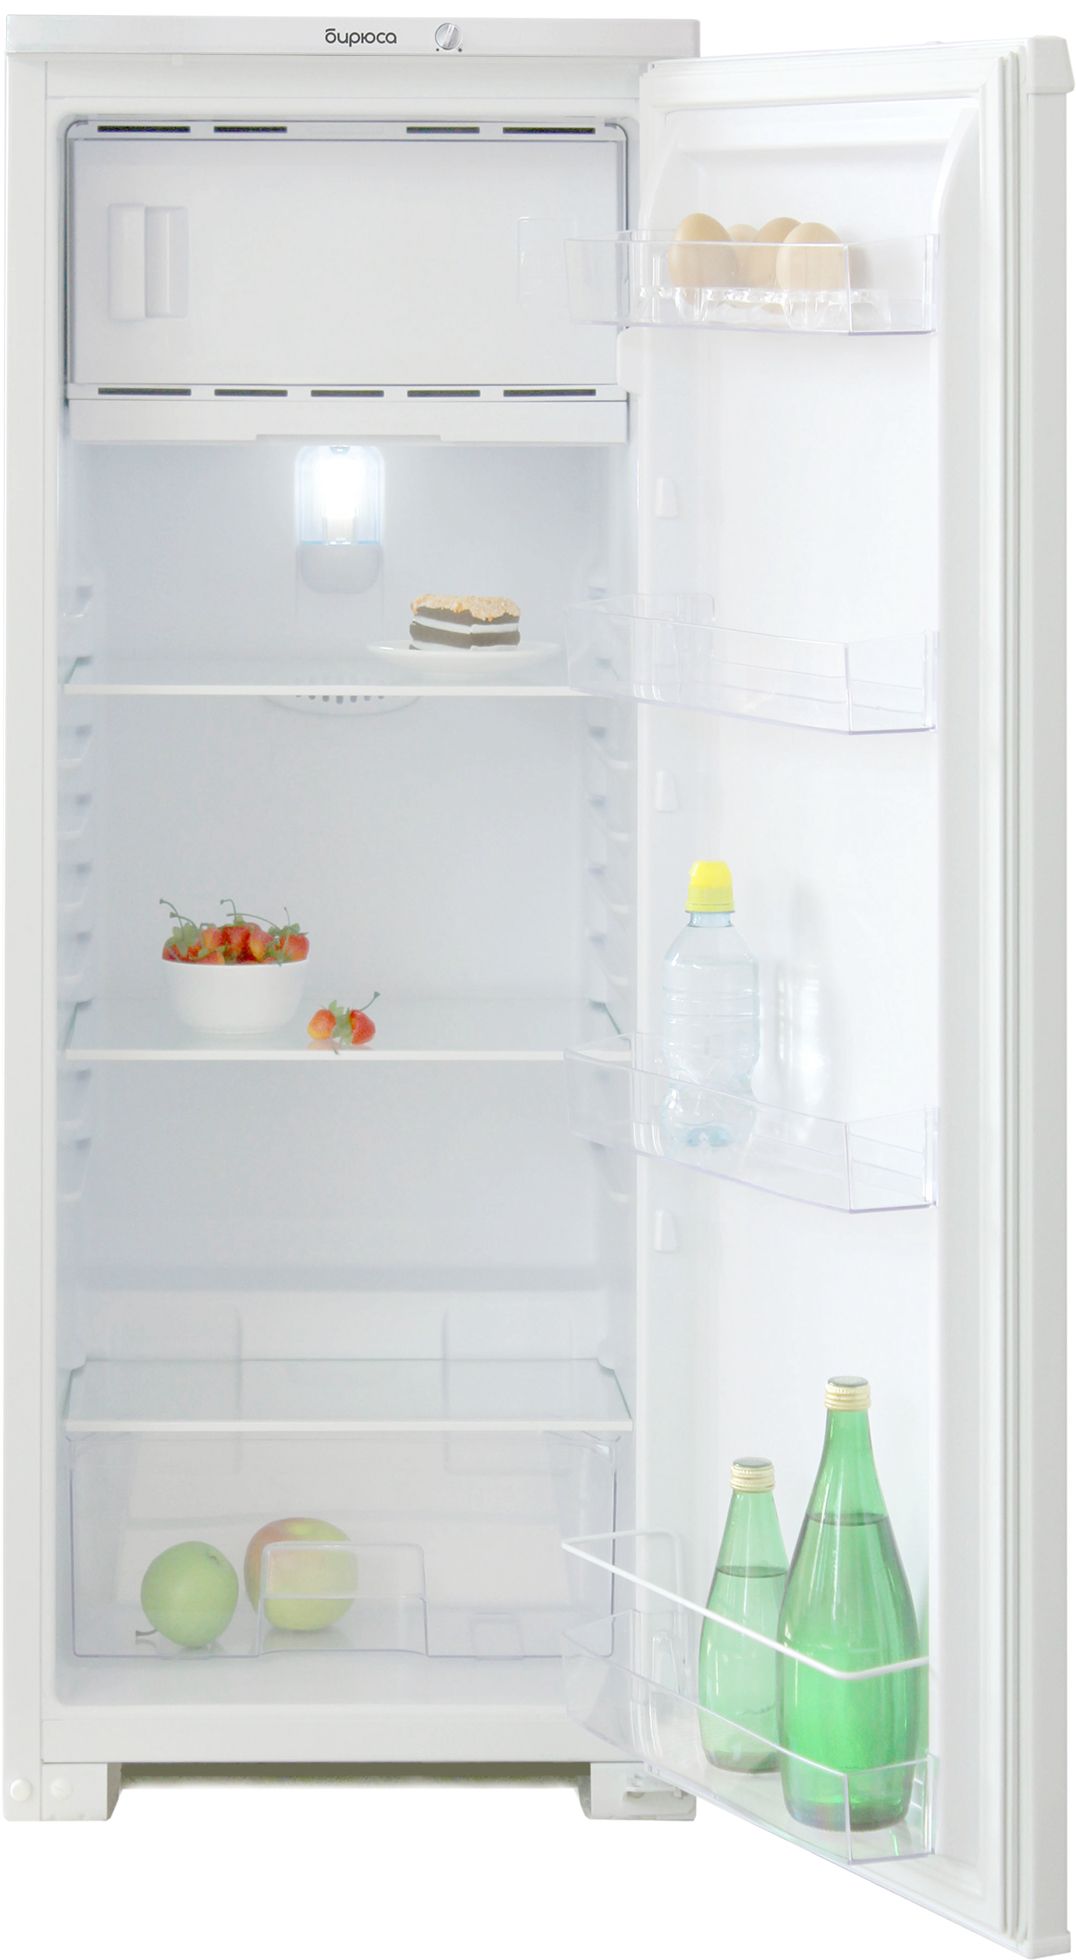 холодильник бирюса 110, купить в Красноярске холодильник бирюса 110,  купить в Красноярске дешево холодильник бирюса 110, купить в Красноярске минимальной цене холодильник бирюса 110